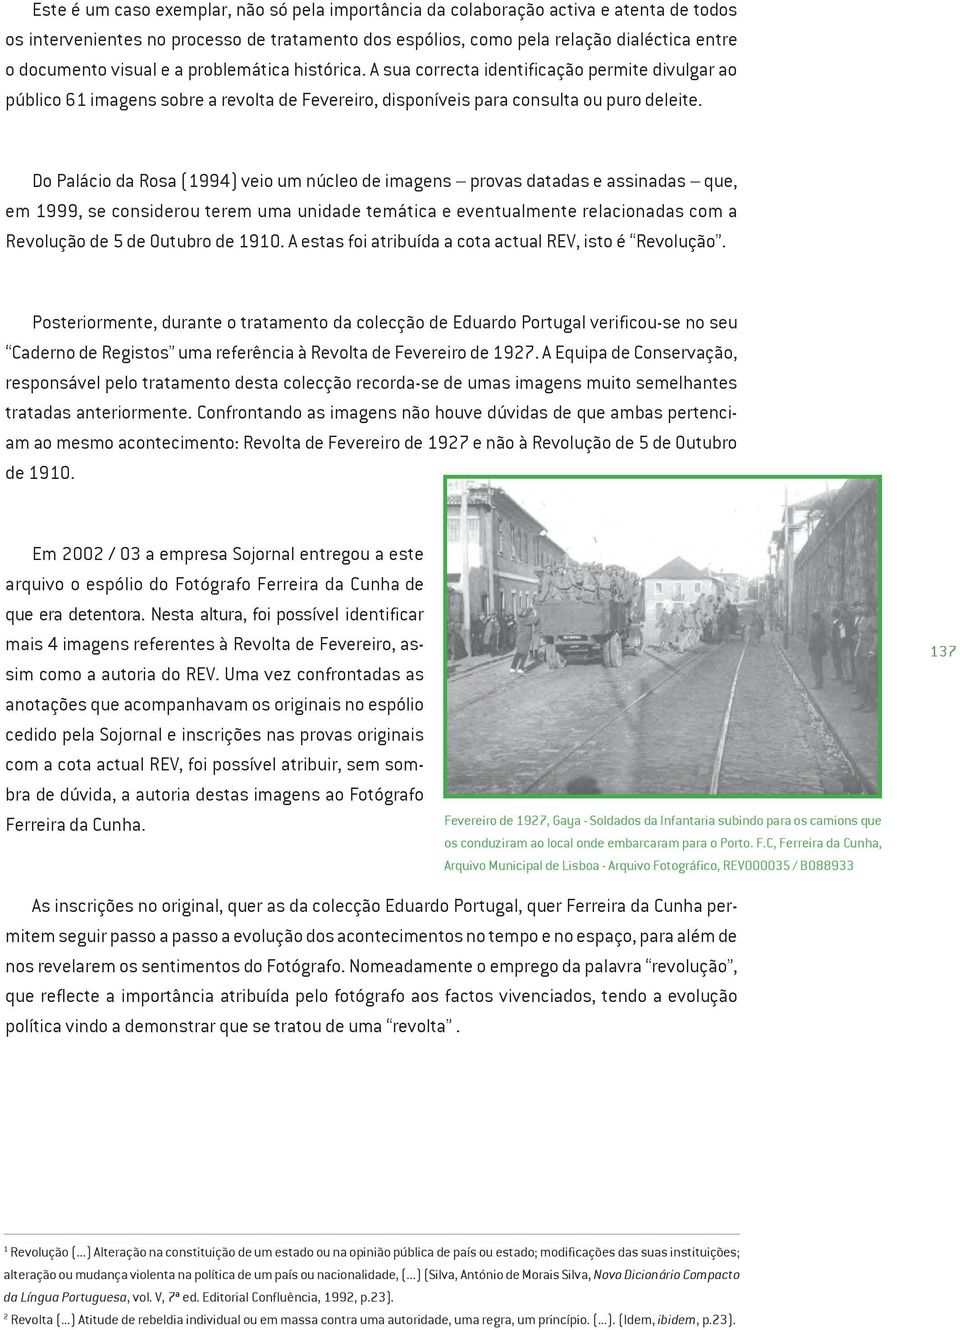 Do Palácio da Rosa (1994) veio um núcleo de imagens provas datadas e assinadas que, em 1999, se considerou terem uma unidade temática e eventualmente relacionadas com a Revolução de 5 de Outubro de